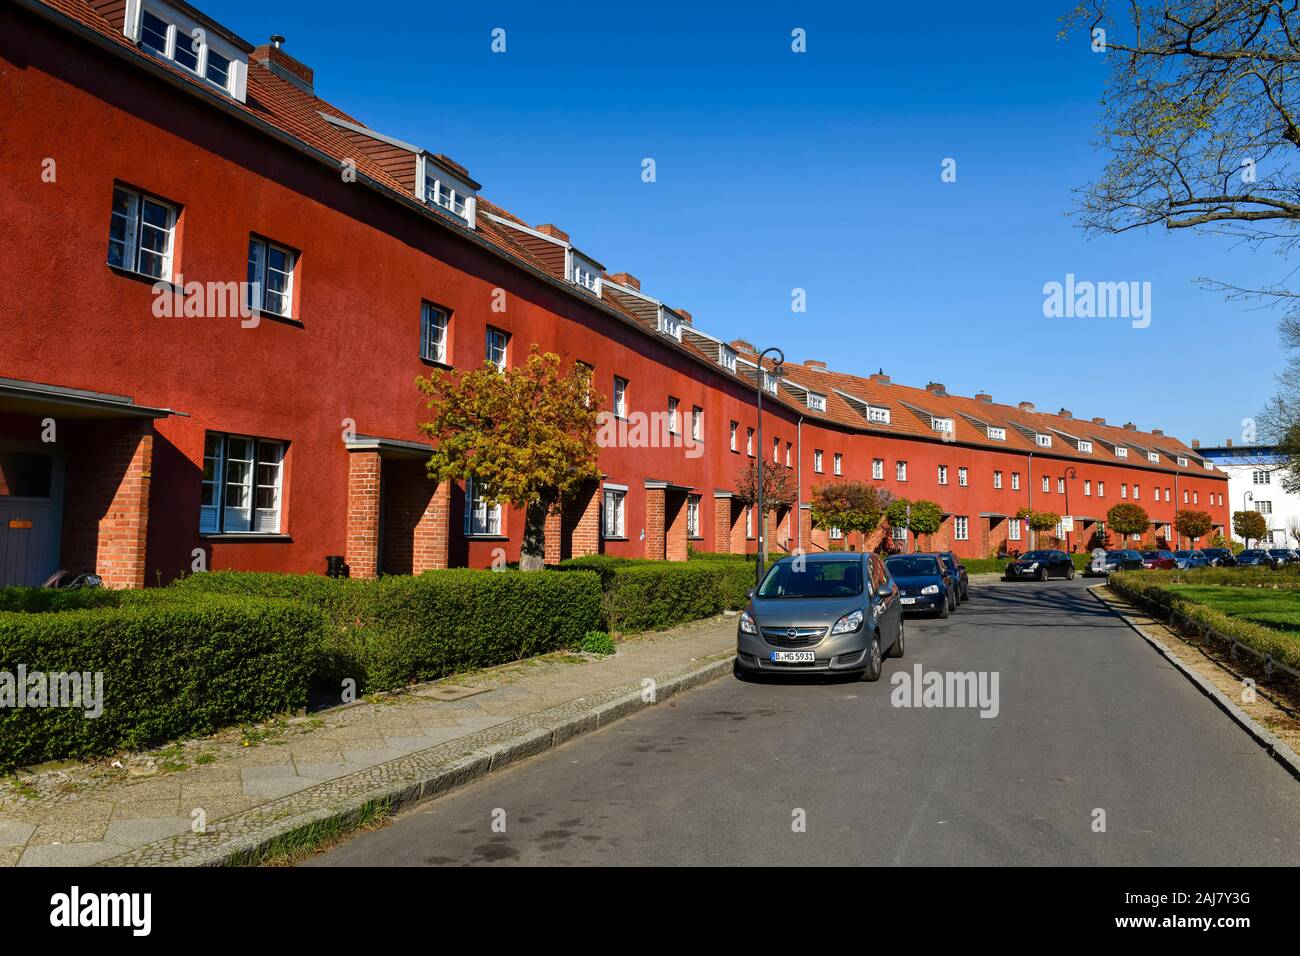 Wohnhäuser, Hüsung, Hufeisensiedlung, Britz, Neukölln, Berlino, Deutschland Foto Stock